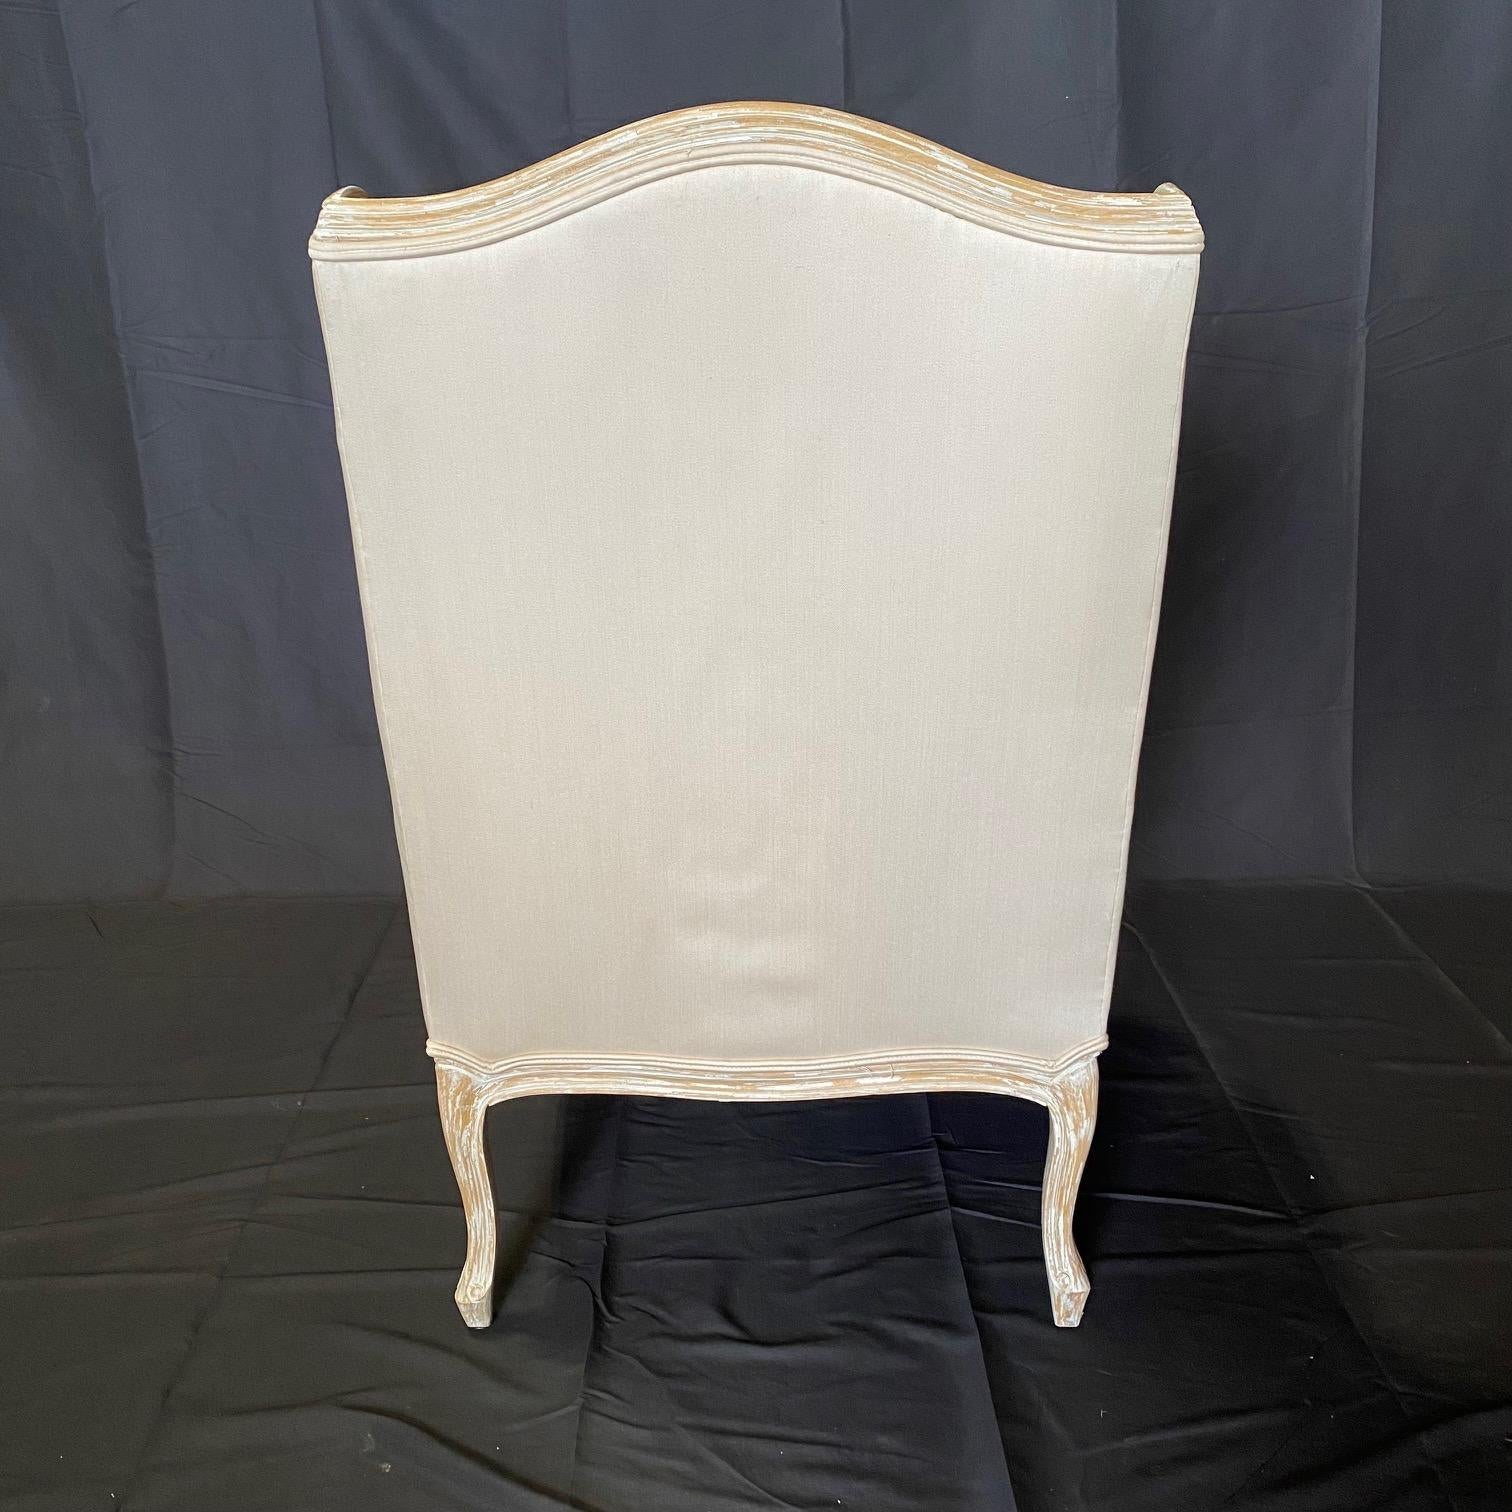 De style Louis XV, cette paire de fauteuils de salon français à dossier en forme d'aile présente une belle patine sur son châssis : bois patiné. Ces chaises élégantes ont été revêtues d'un mélange de lin et de satin blanc pâle. hauteur des